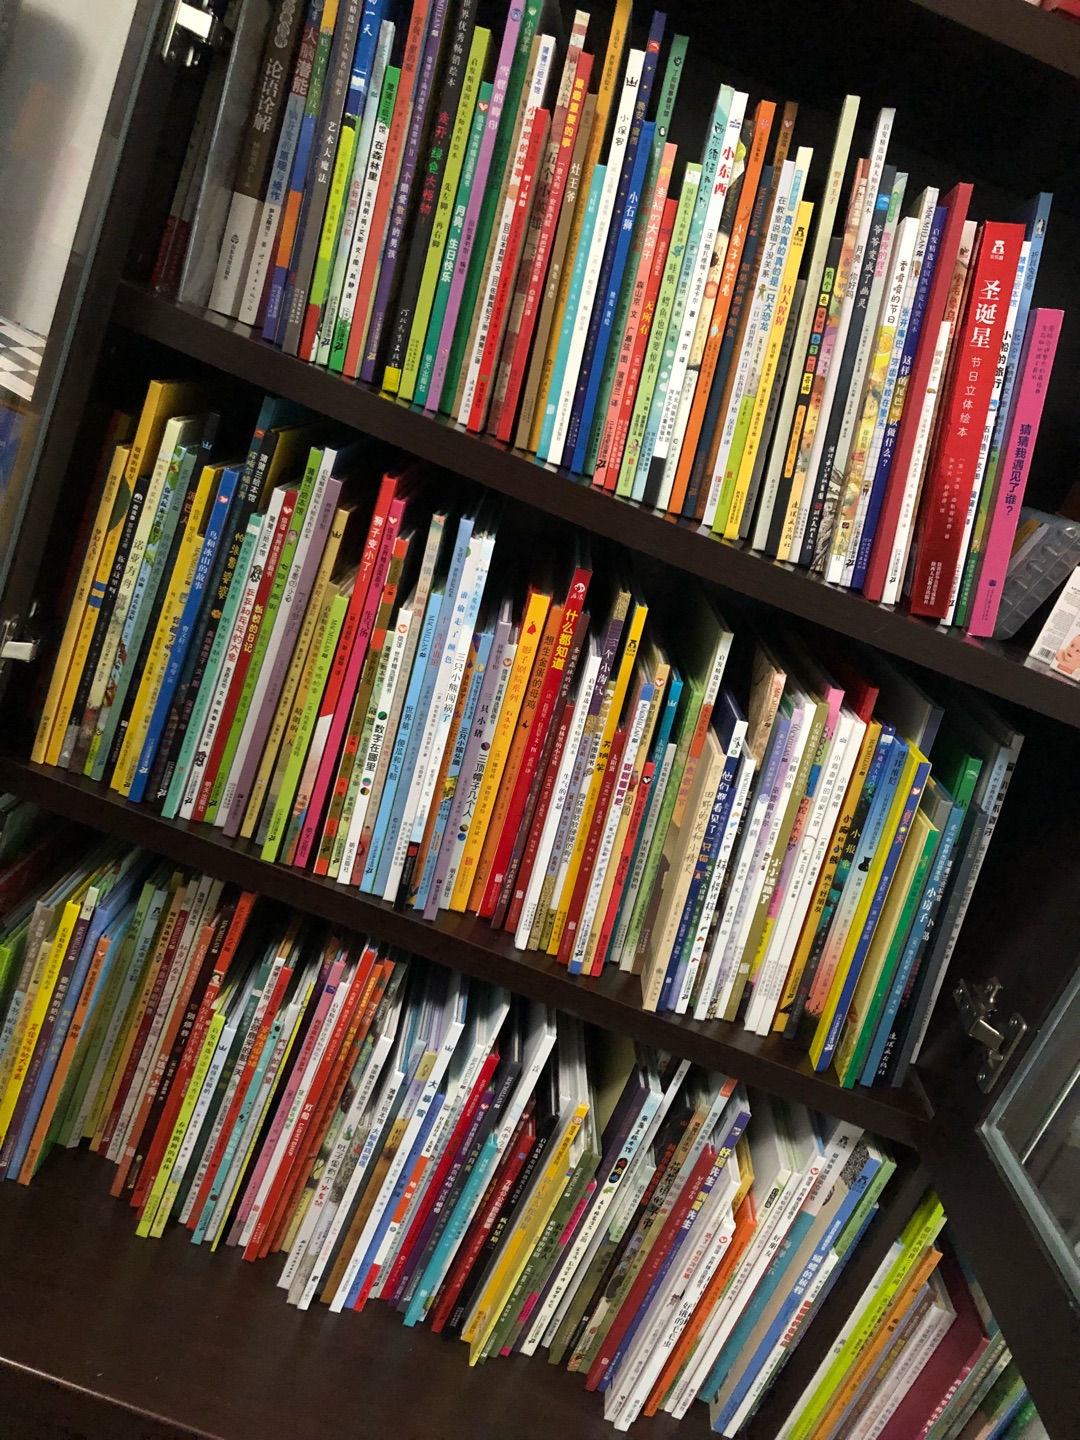 很可爱的故事 让儿子知道了黄色和蓝色混在一起 会变成绿色 顺便晒一下书柜的一部分 两年 陪儿子读了五百多本绘本